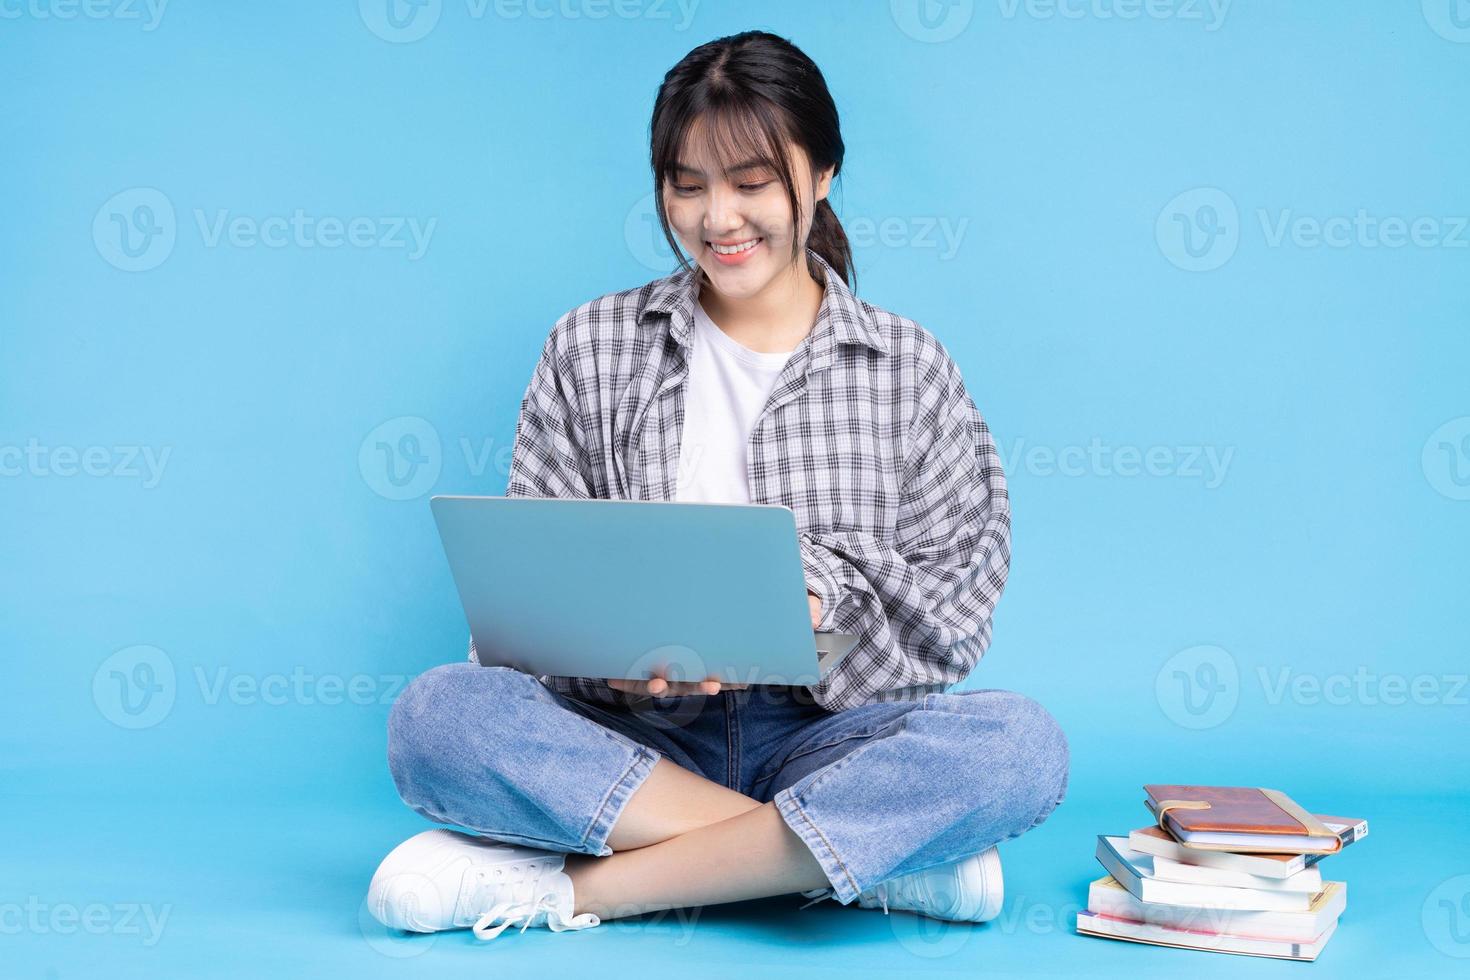 asiatische Studentin mit verspieltem Ausdruck auf blauem Hintergrund foto